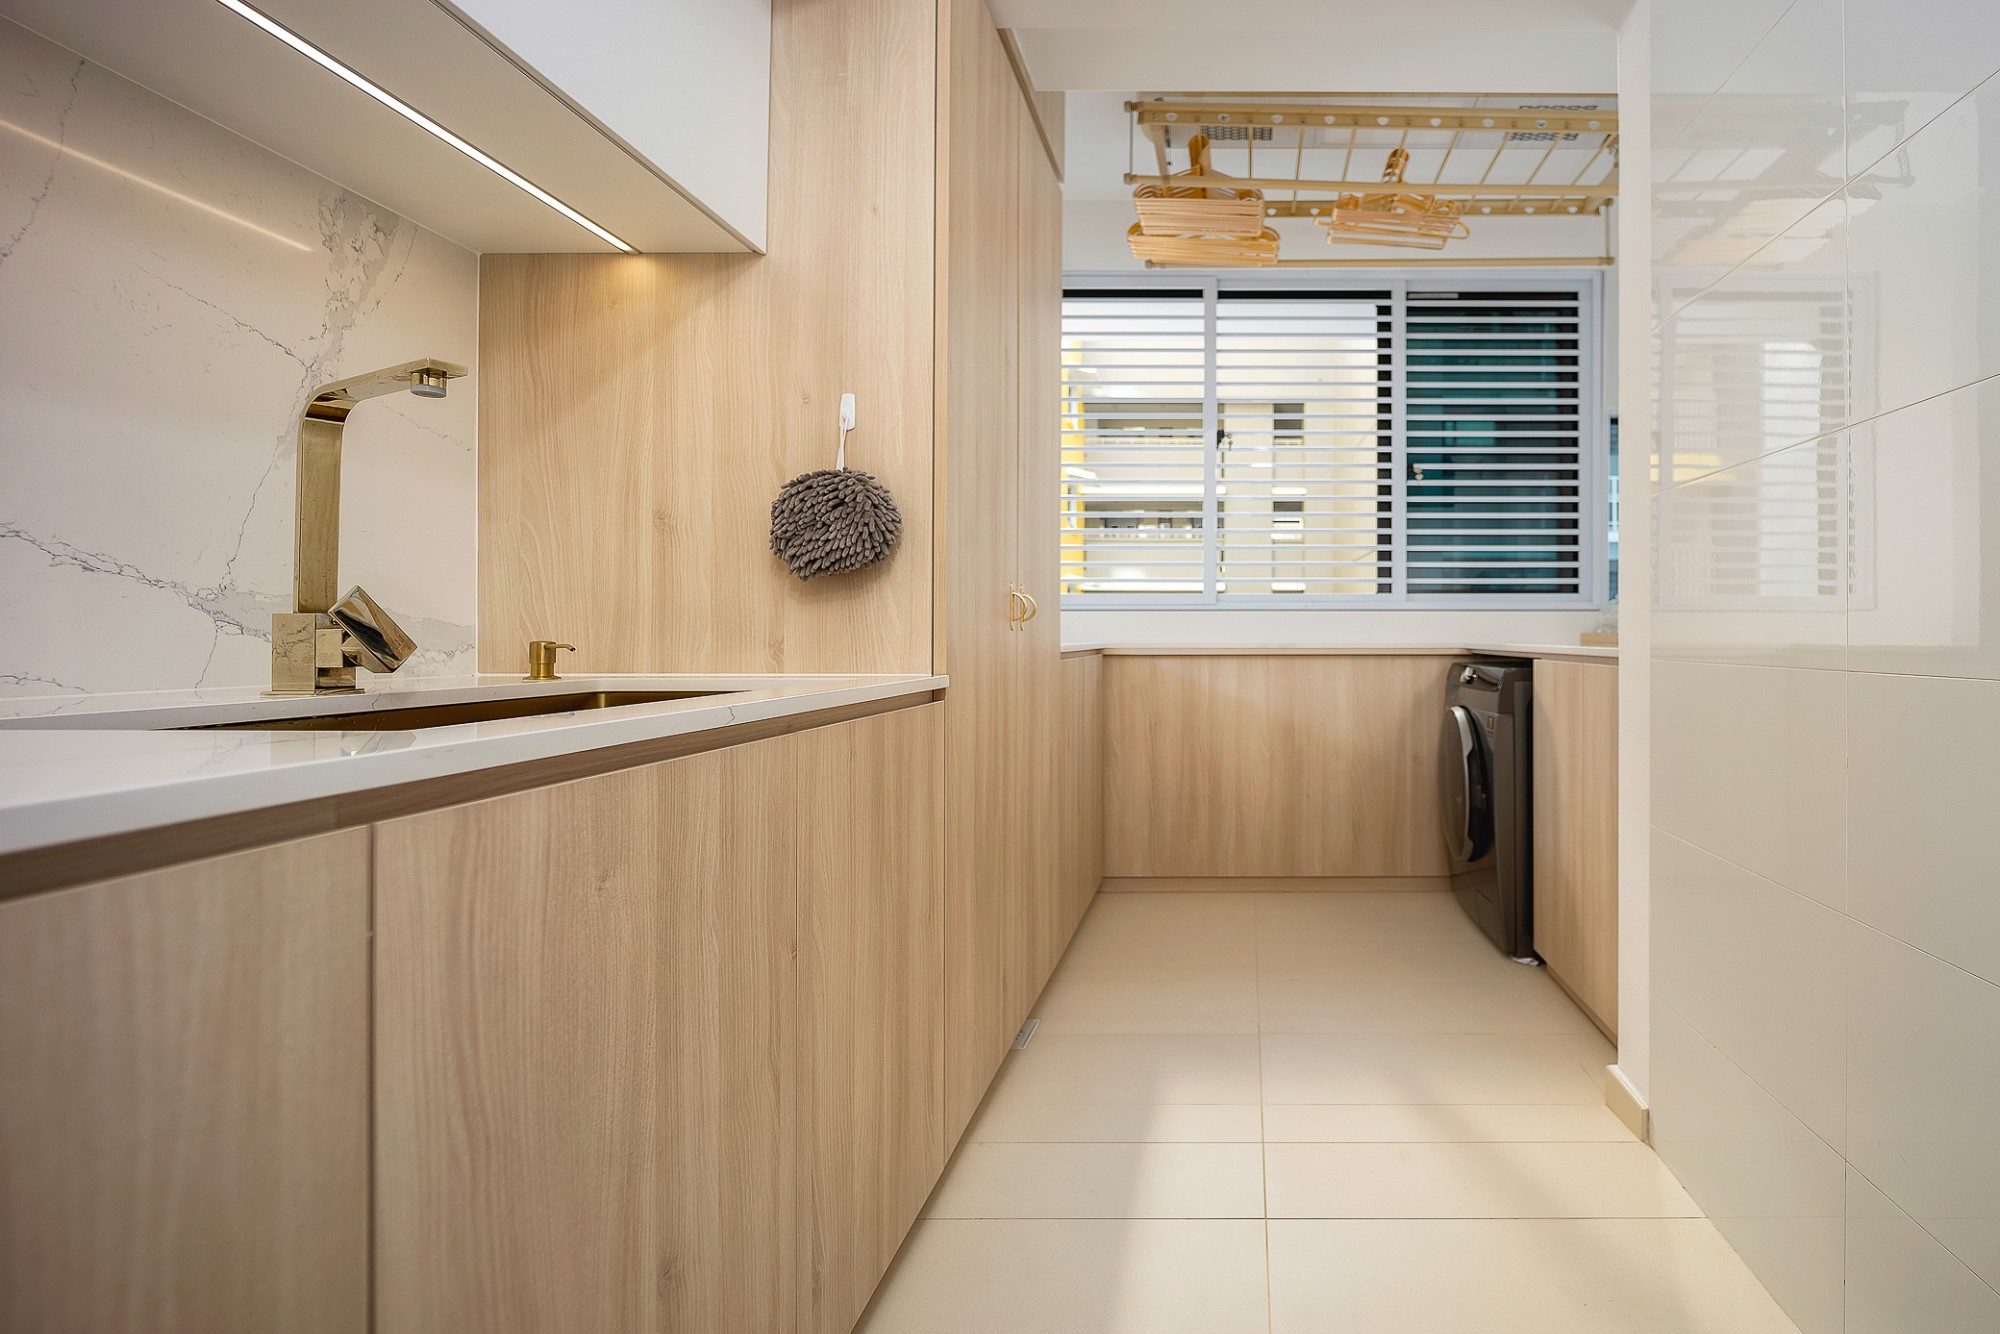 Imagen número 27 de la sección actual de Cosentino viste el interior de un apartamento ubicado en uno de los distritos biofílicos más vanguardistas del mundo